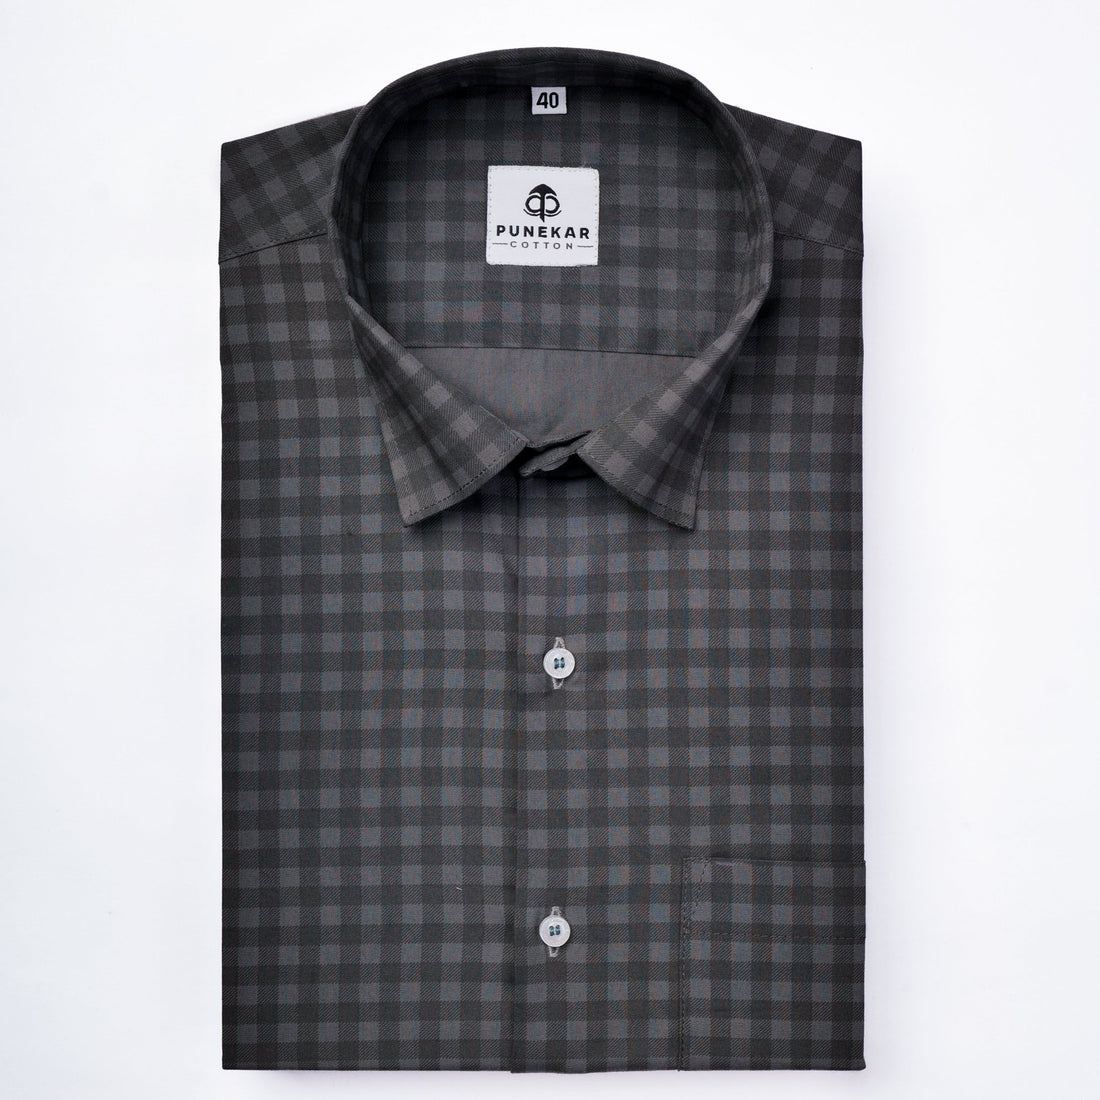 Dark Grey Color Buffalo Checks Cotton Shirt For Men - Punekar Cotton